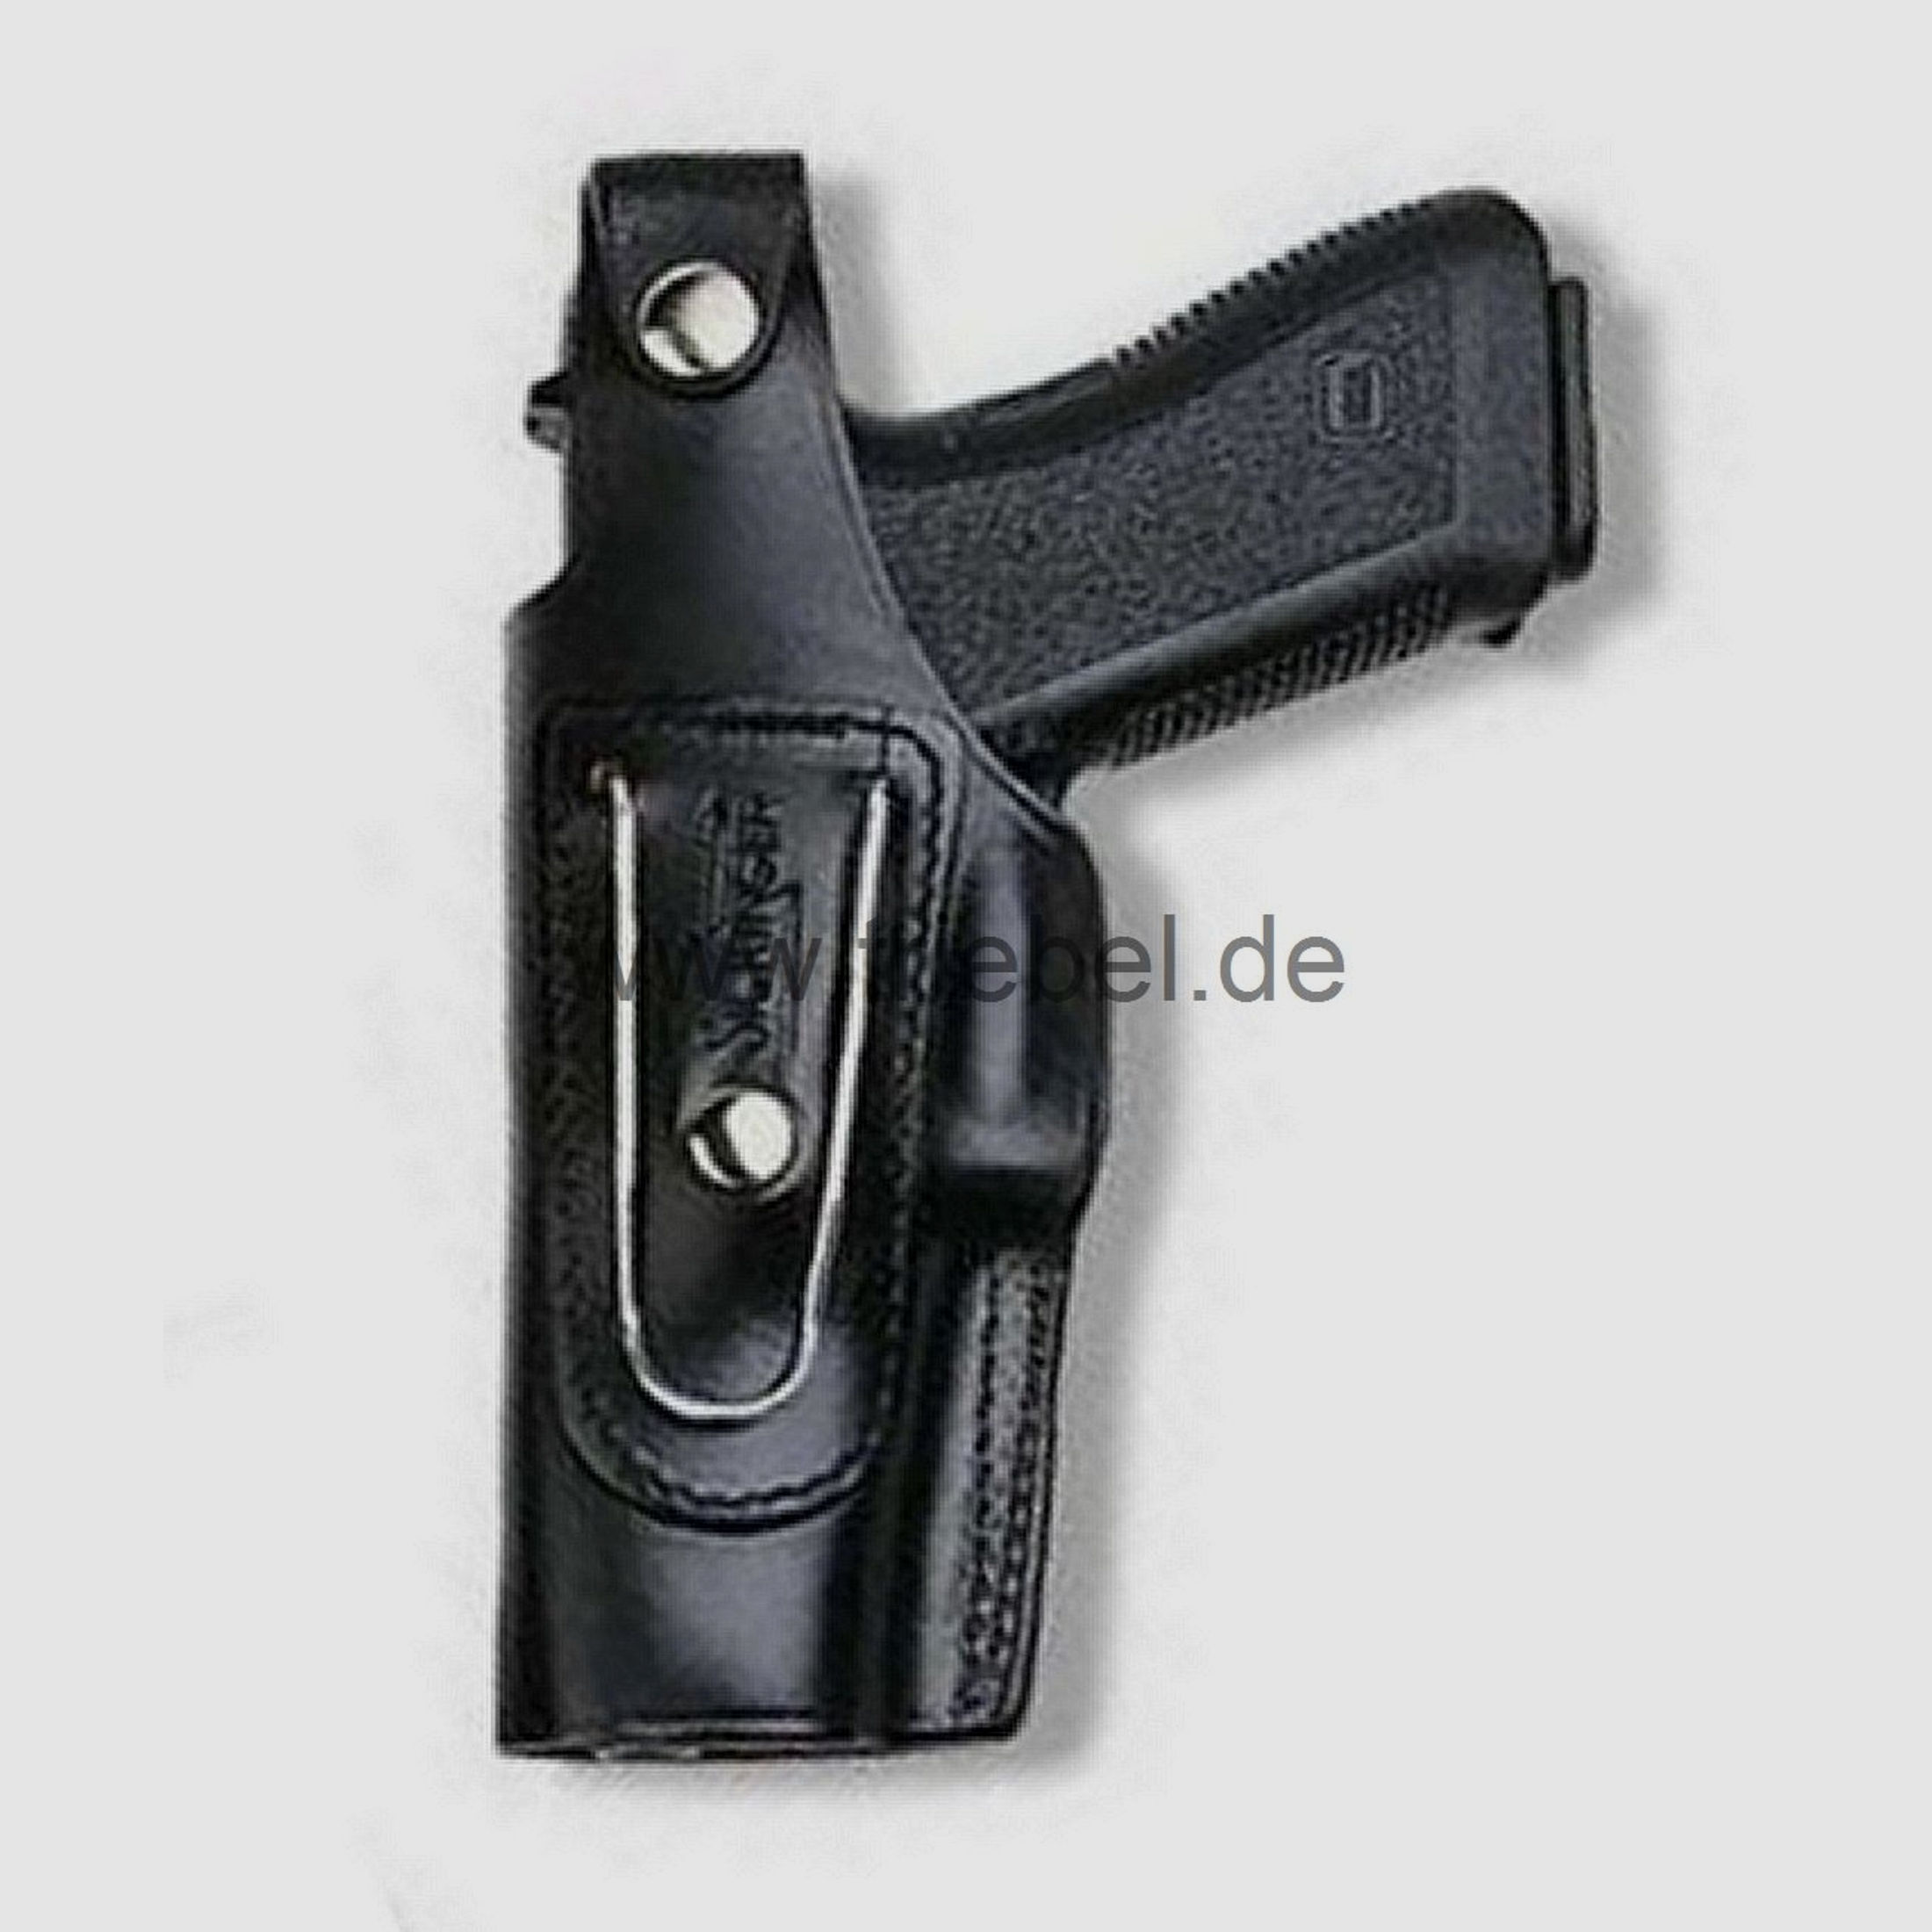 SICKINGER Holster (Leder) f. Glock 34/35 62362 -G-Man schwarz